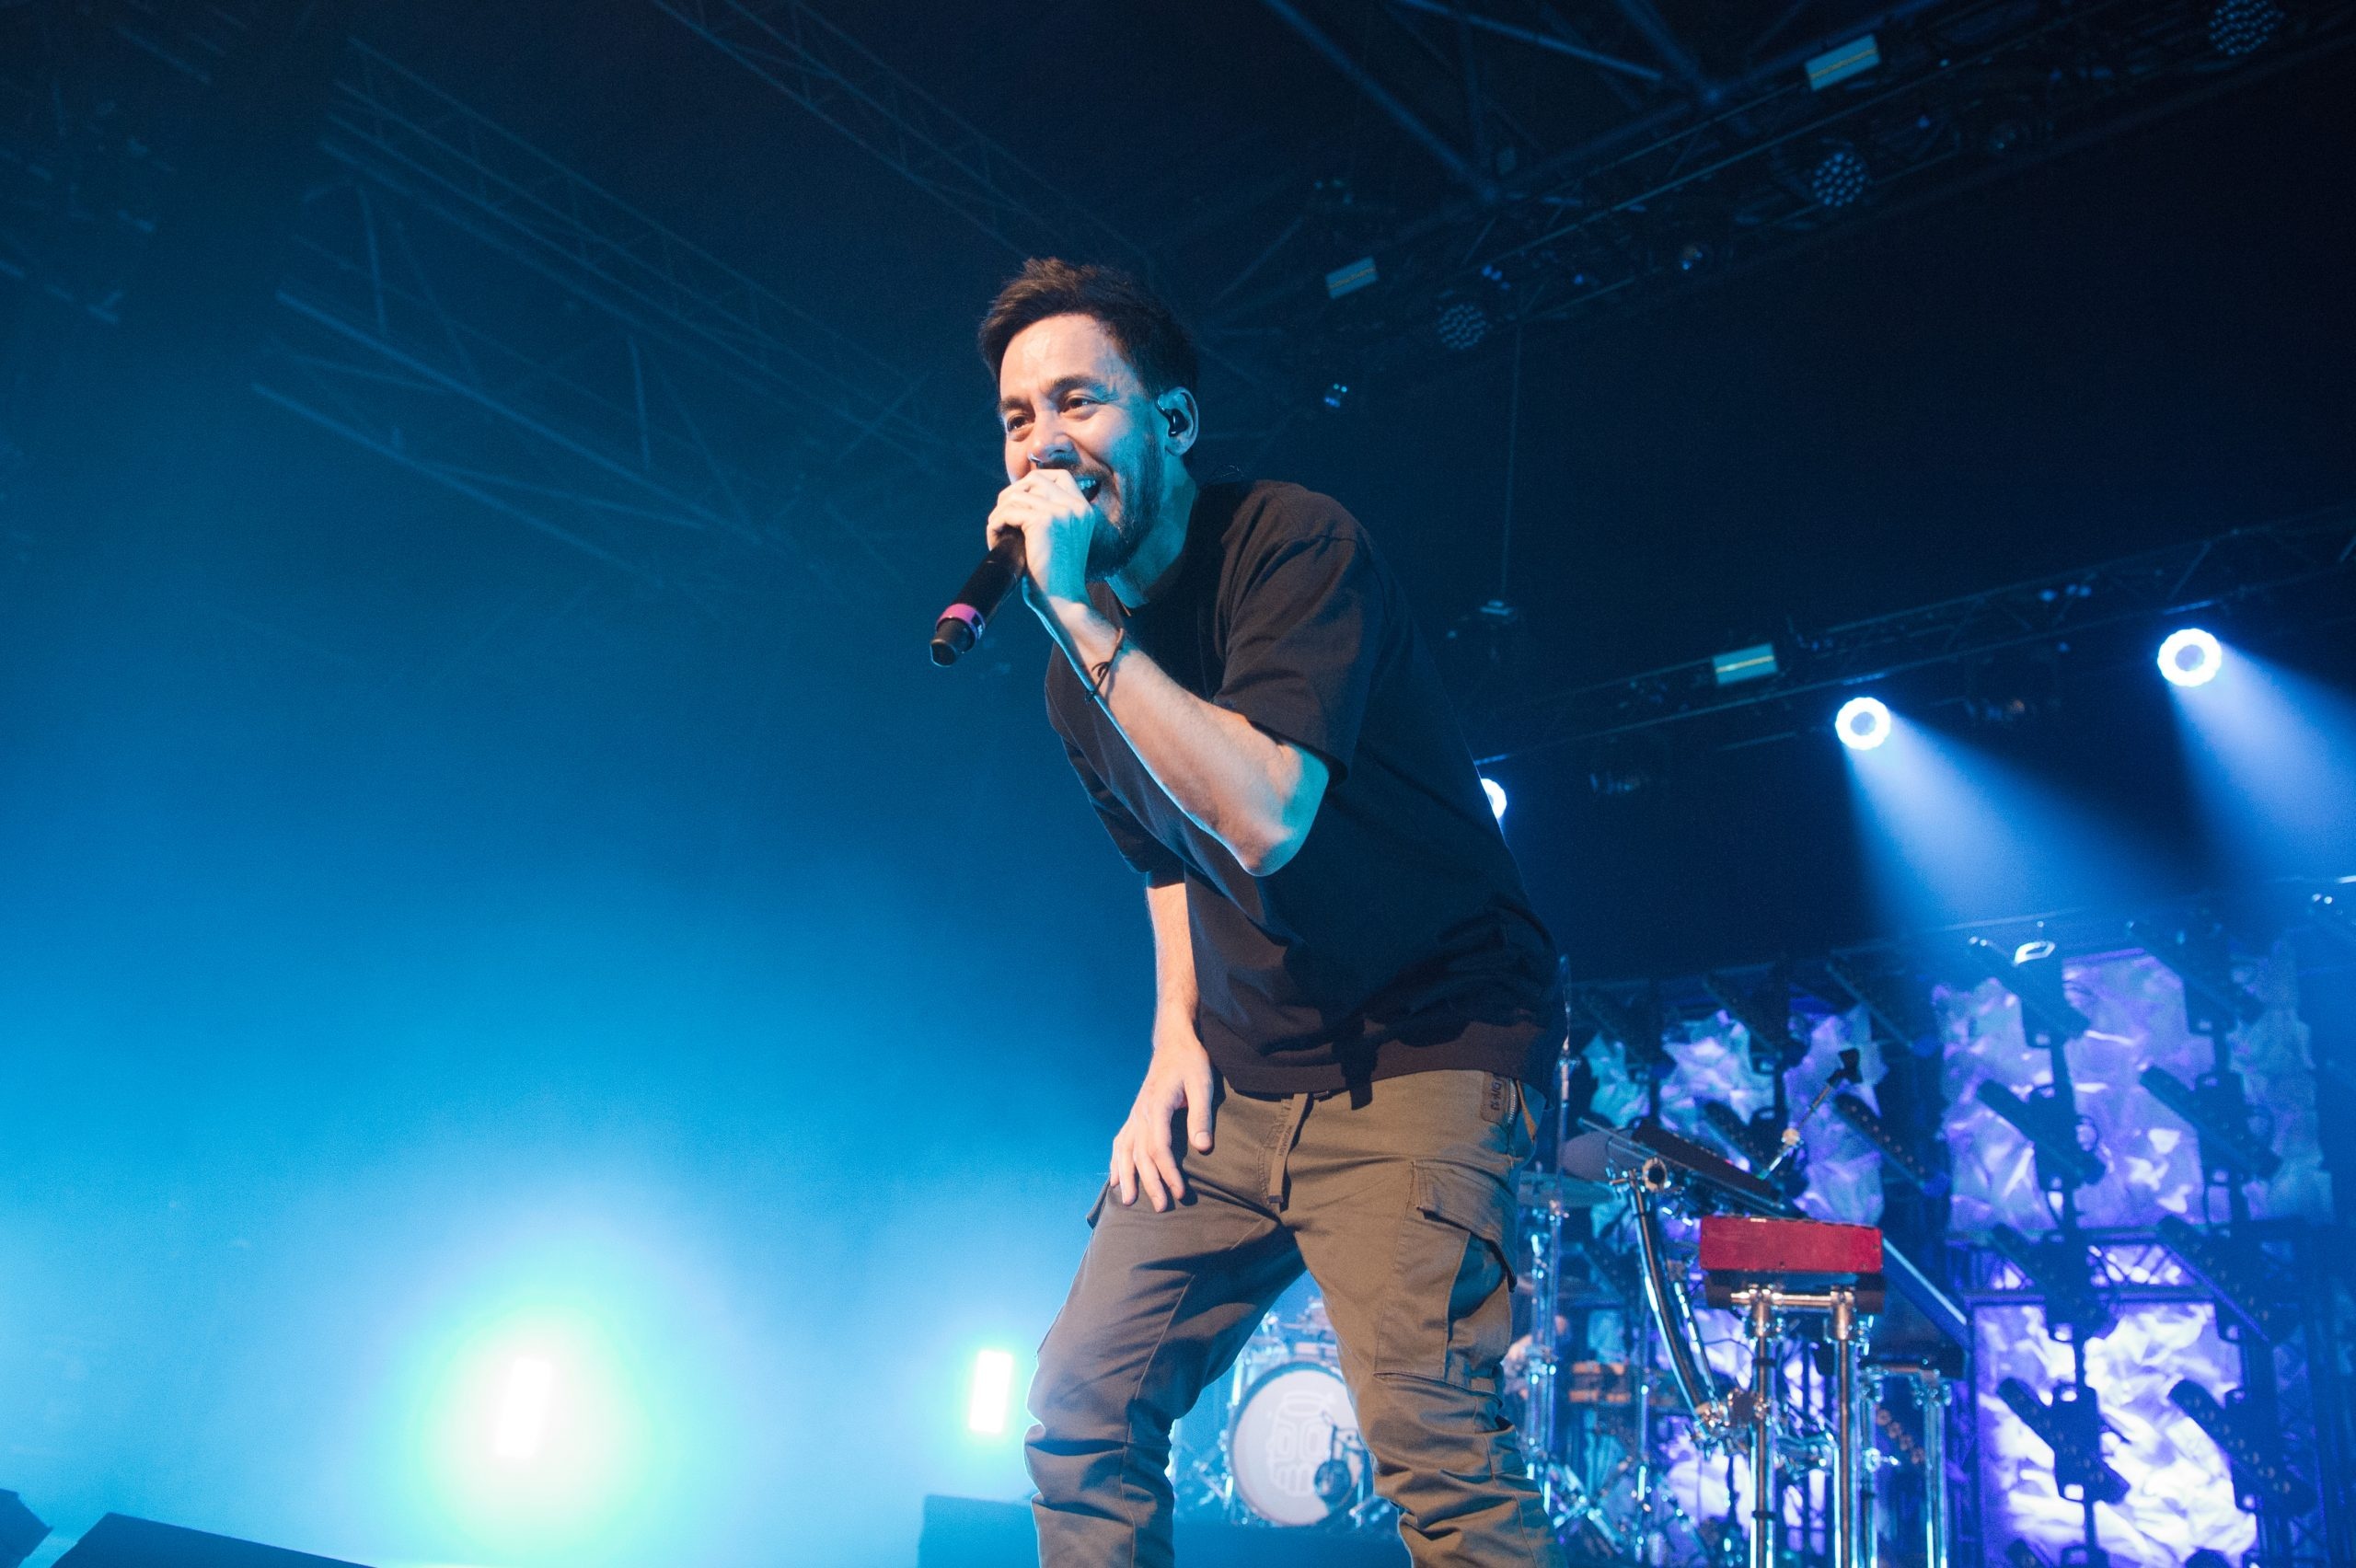 Mike Shinoda de Linkin Park lanzar un disco que compuso junto a sus fans en Twitch 2560x1710